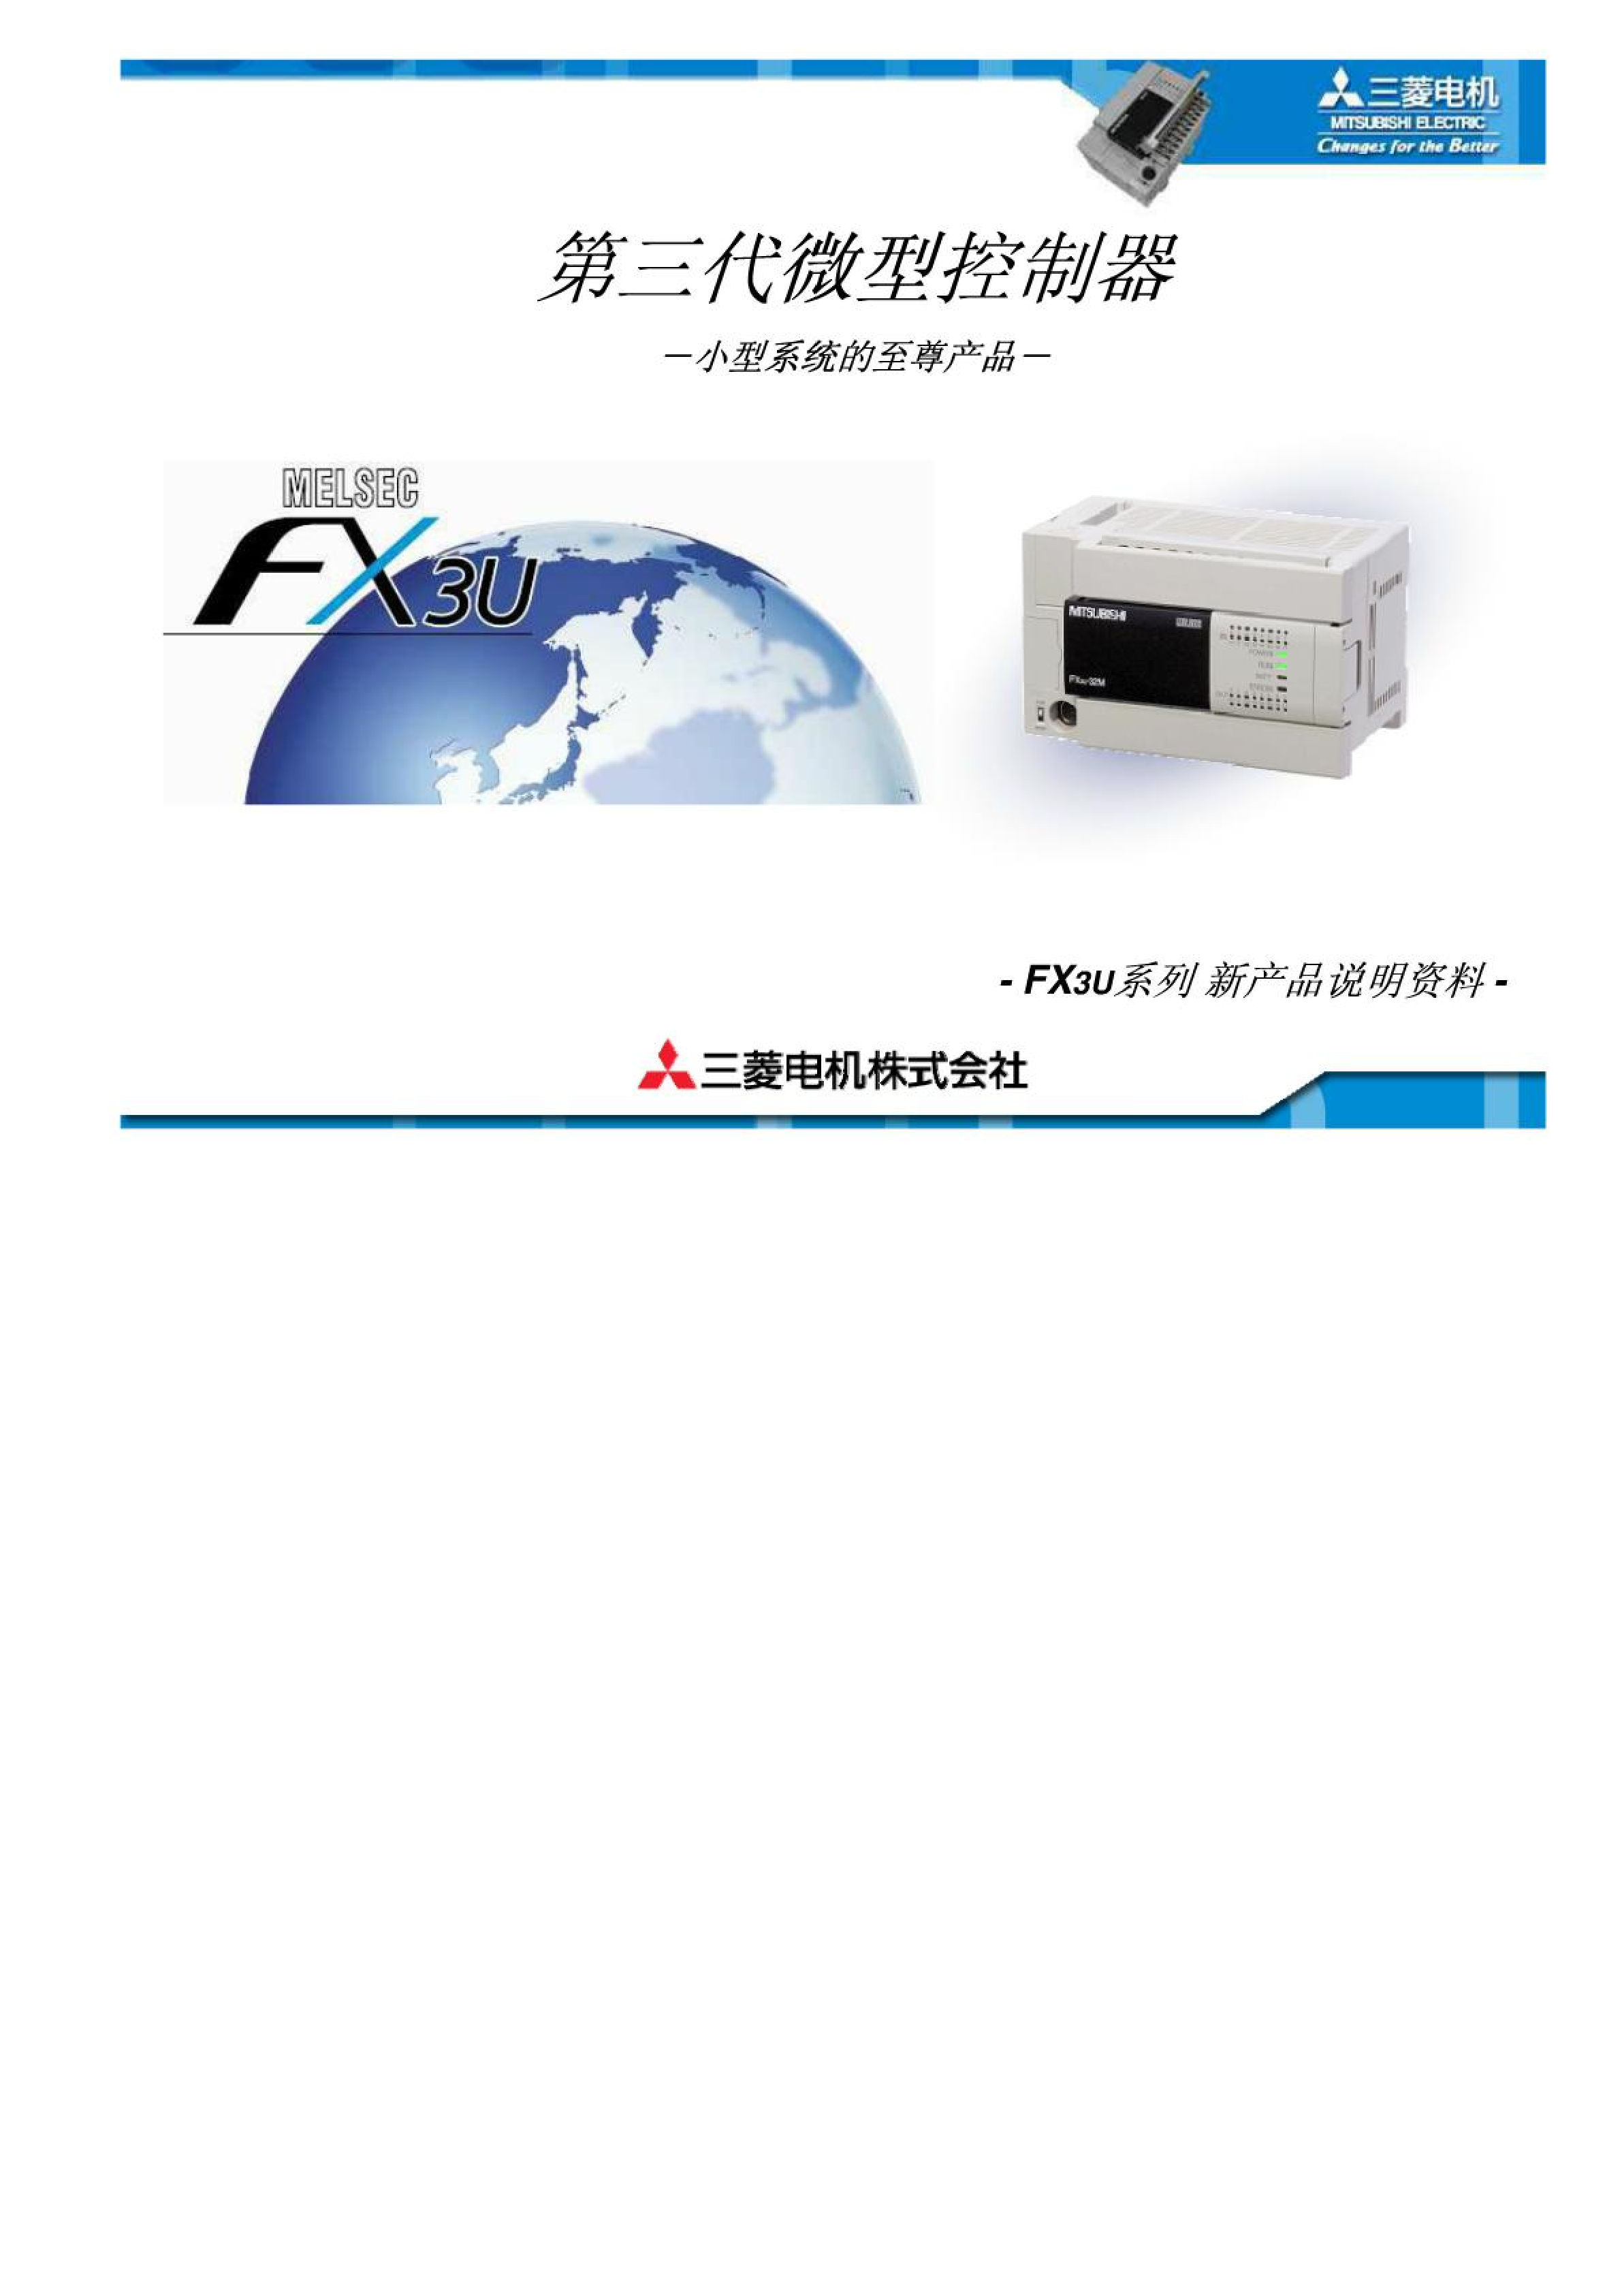 三菱FX3U 系列PLC FX3U系列新产品说明资料_广州菱控